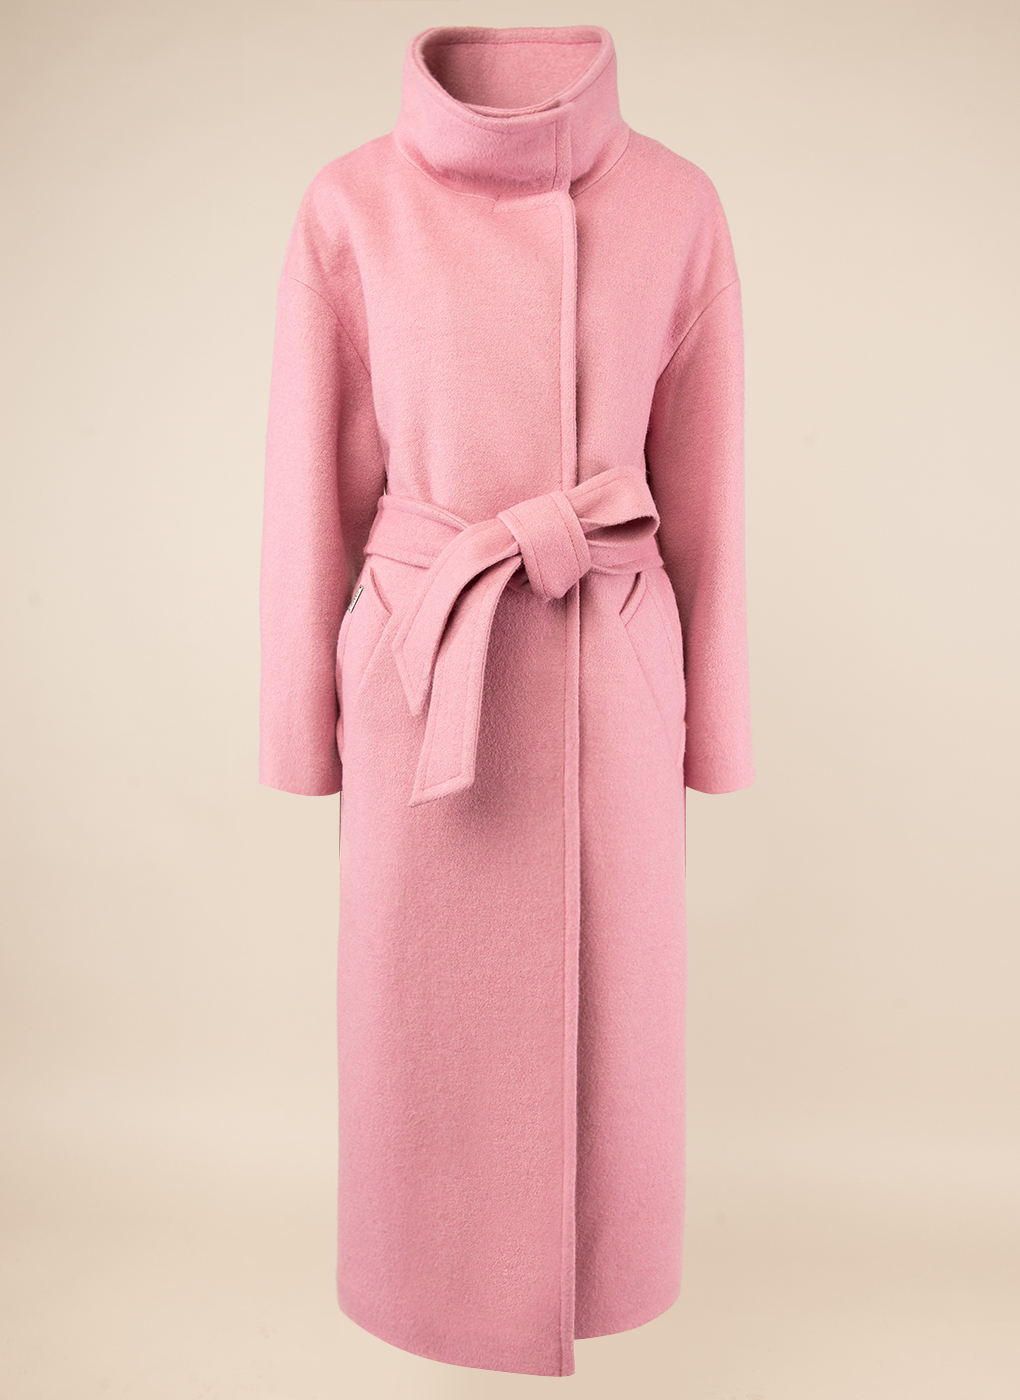 Пальто женское idekka 47267 розовое 42 RU